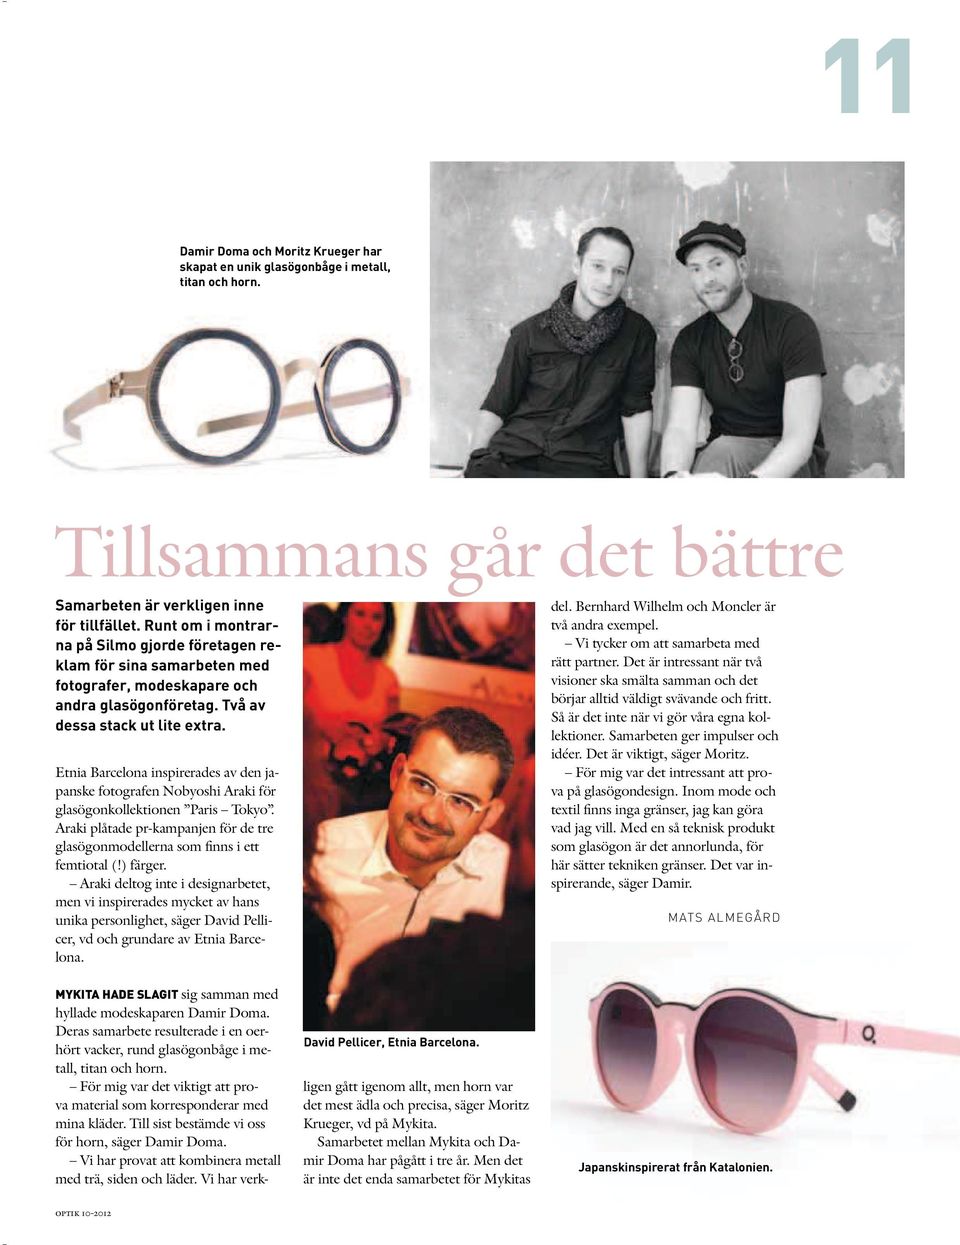 Etnia Barcelona inspirerades av den japanske fotografen Nobyoshi Araki för glasögonkollektionen Paris Tokyo. Araki plåtade pr-kampanjen för de tre glasögonmodellerna som finns i ett femtiotal (!